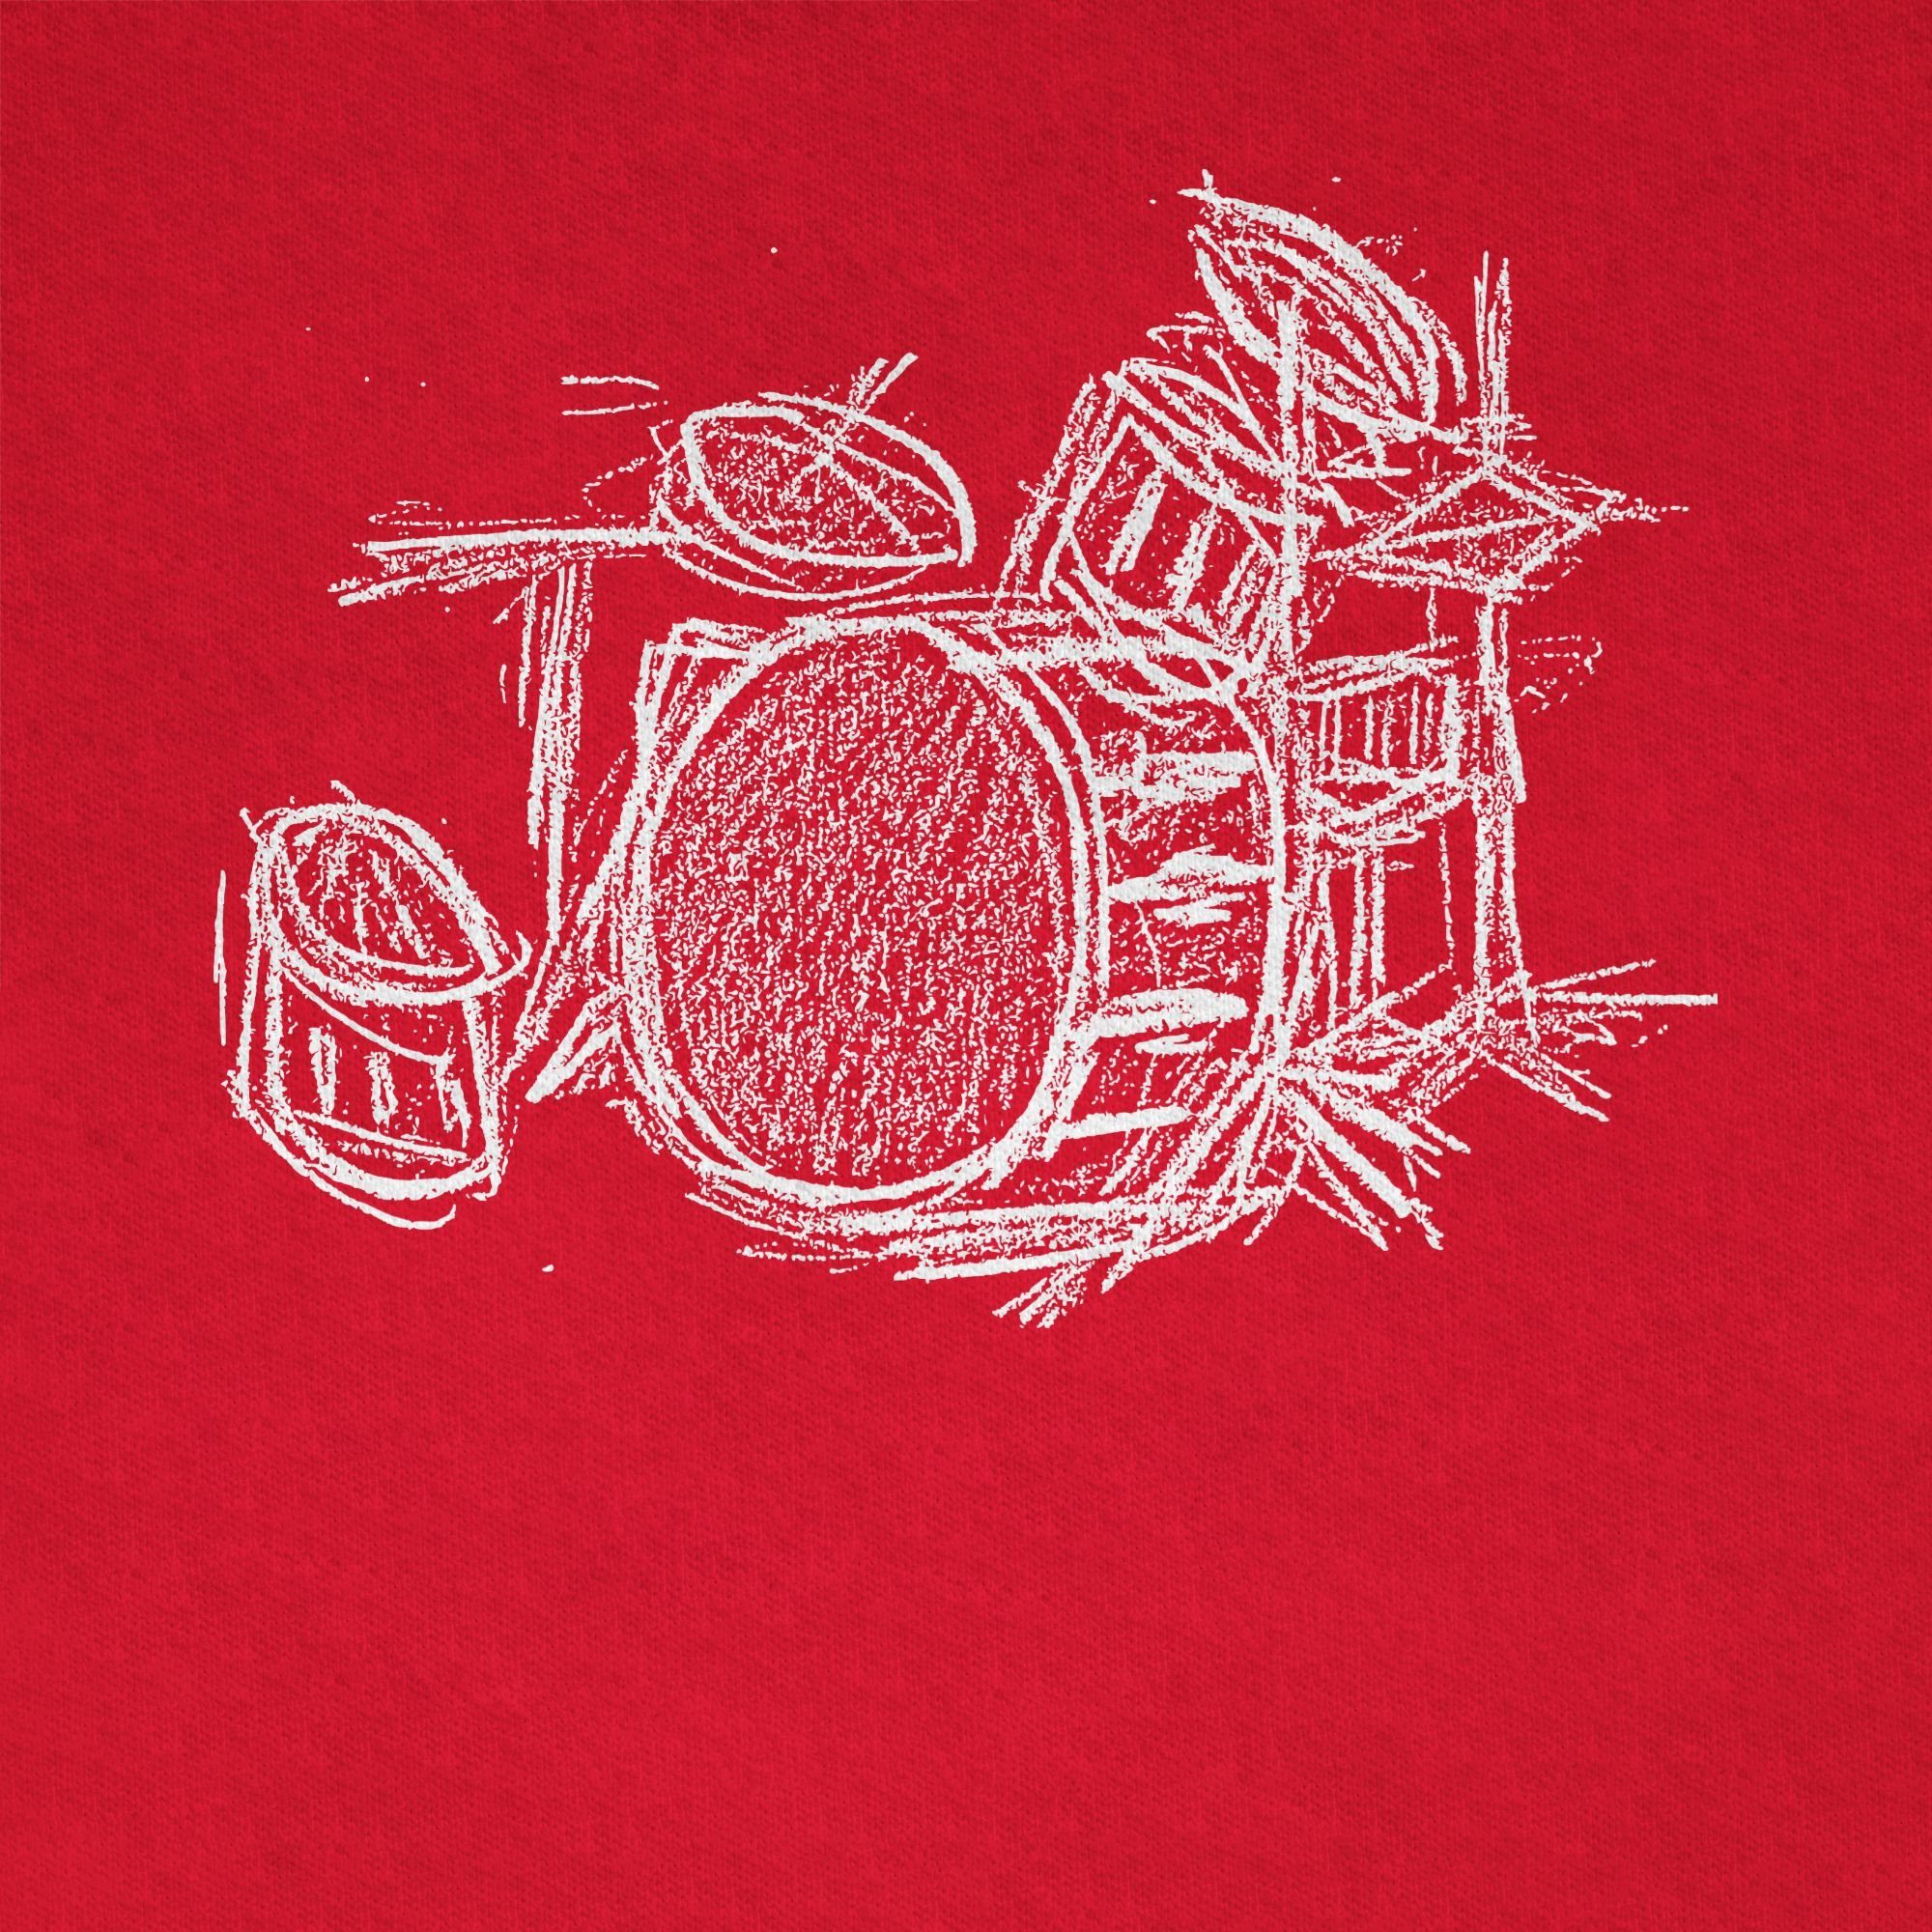 Shirtracer T-Shirt Schlagzeug Rot - 3 Music Kreidezeichnung